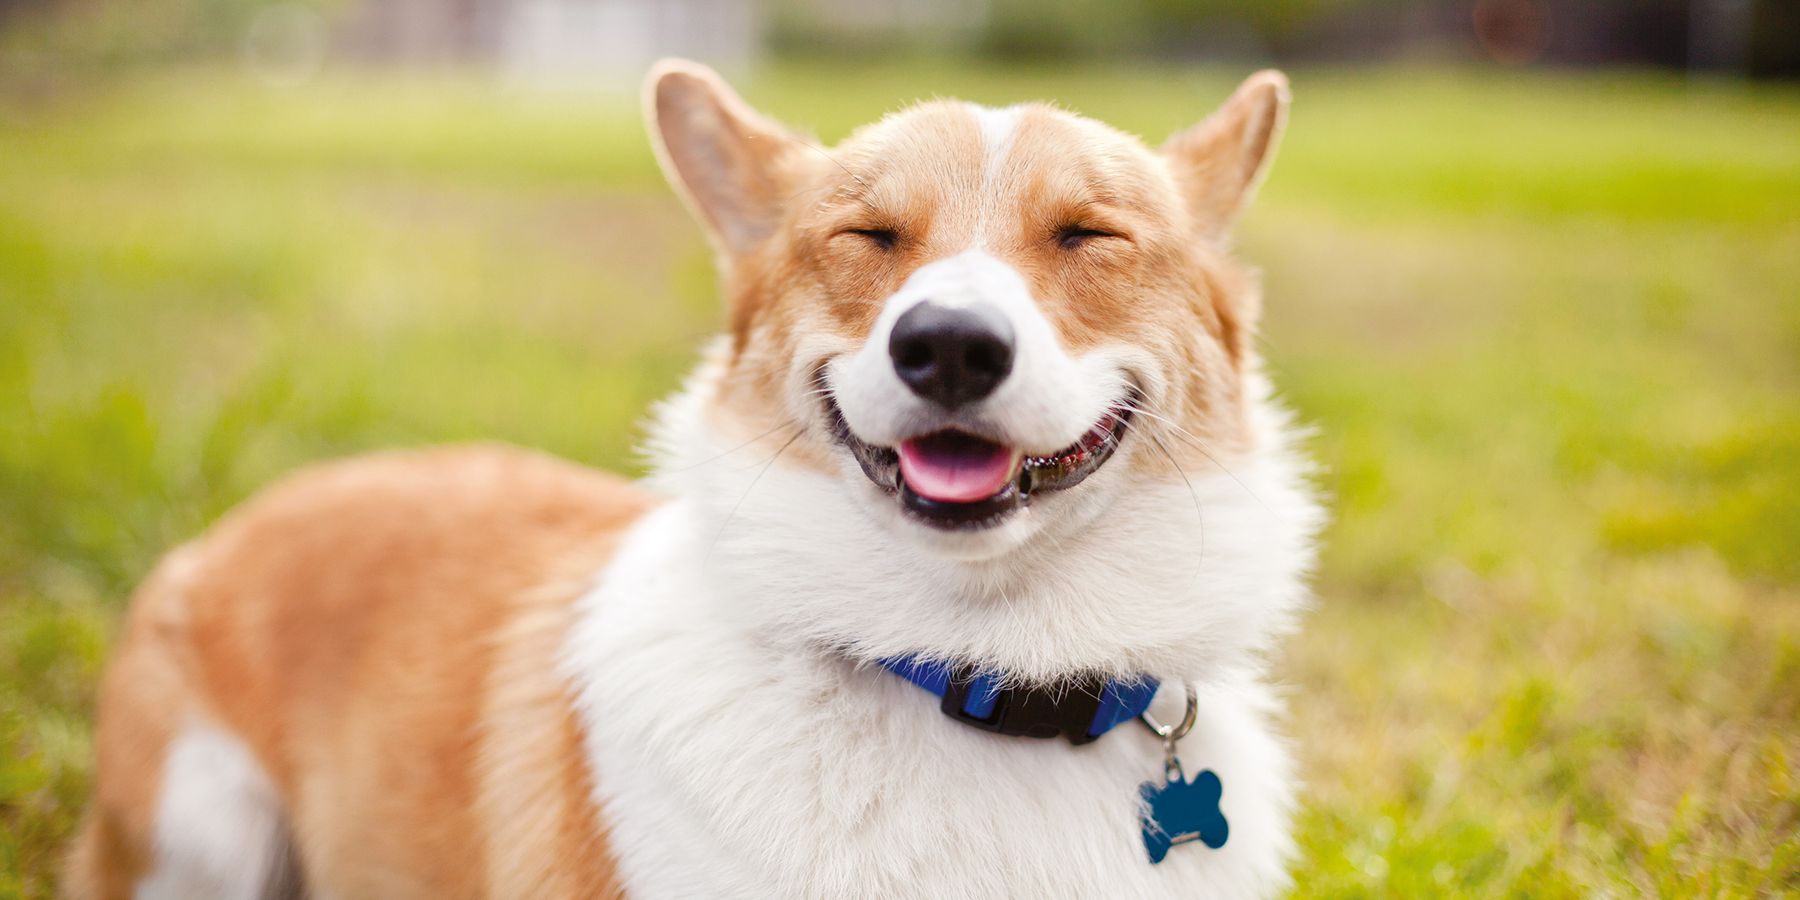 gülümsemeye benzer bir ifadesi olan köpek